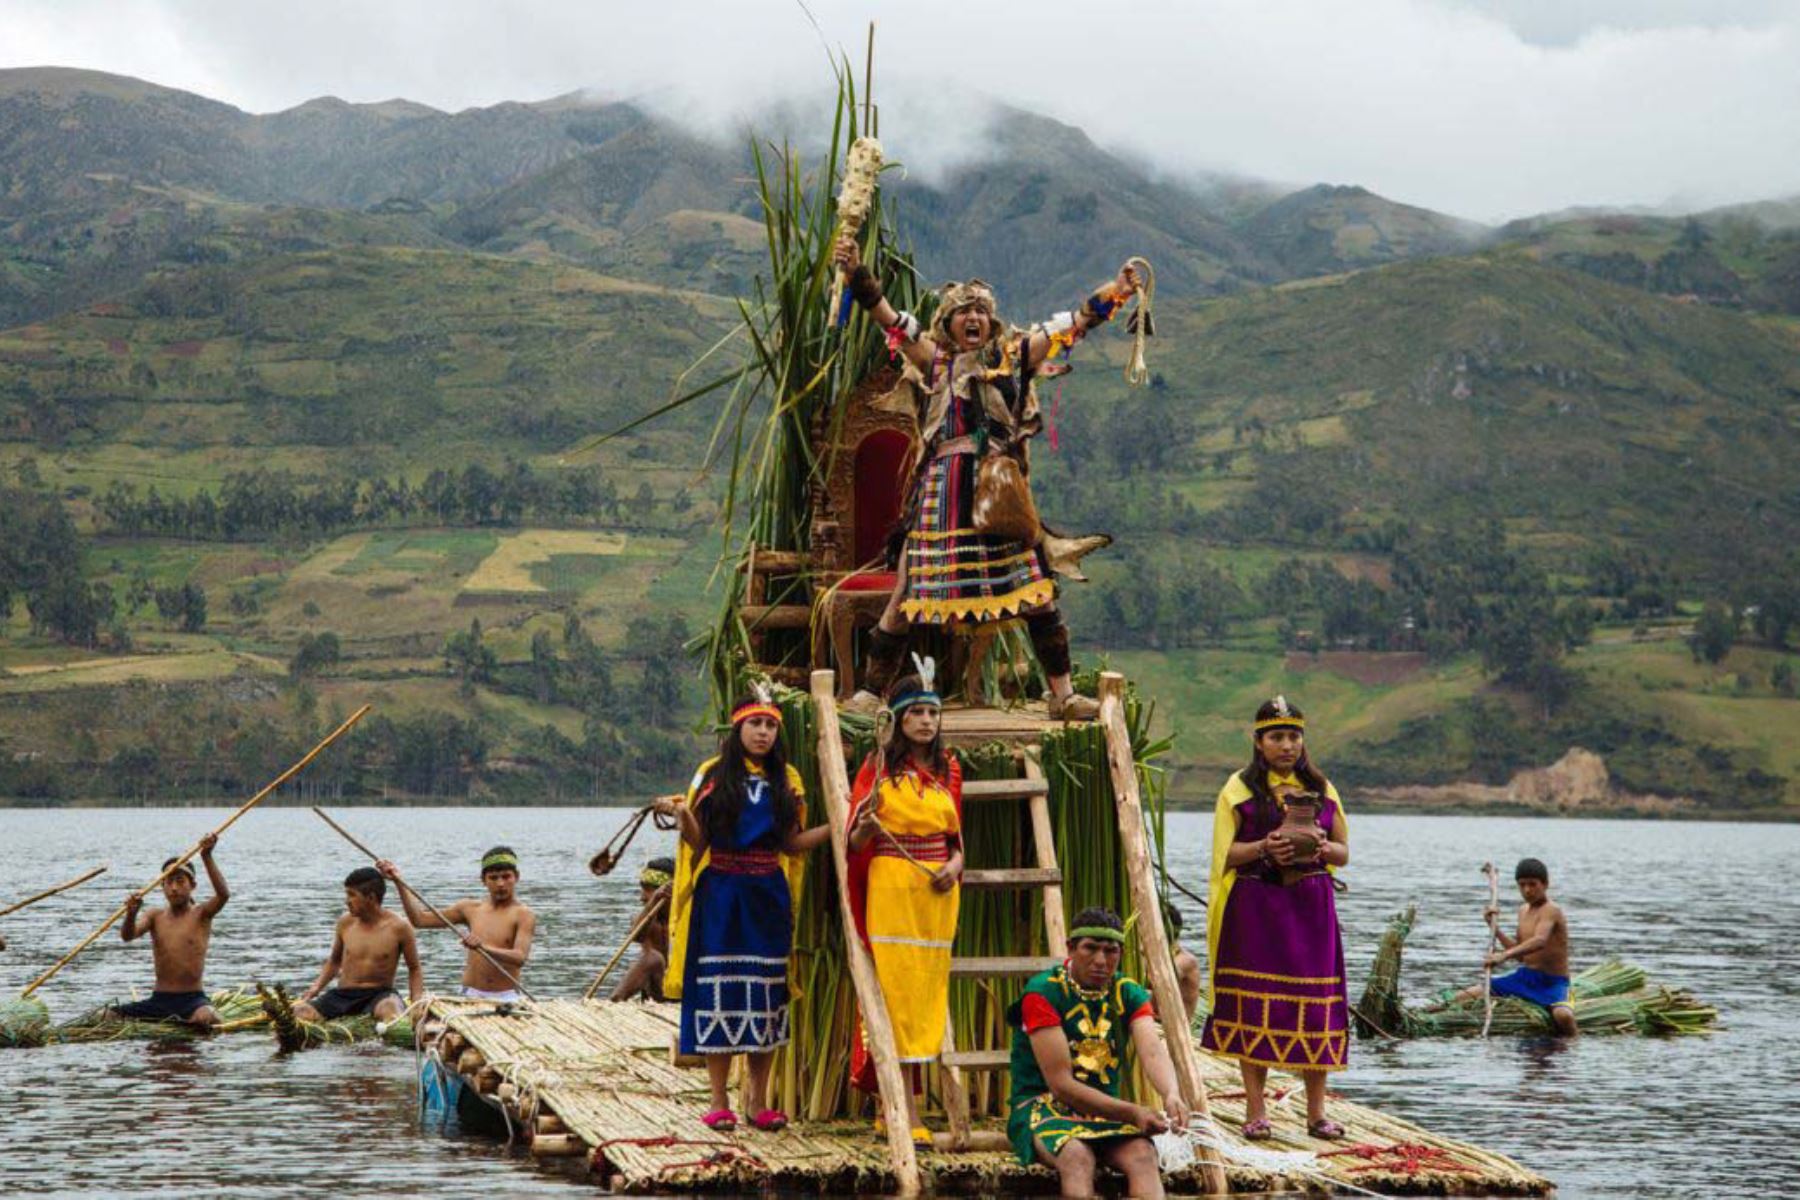 La festividad del Sondor Raymi, que se celebra en junio, es la escenificación del origen de la civilización chanka en la mítica laguna de Pacucha, y de la decisiva batalla entre chankas e incas, dos civilizaciones en disputa por el control del fértil y estratégico valle de Apurímac.